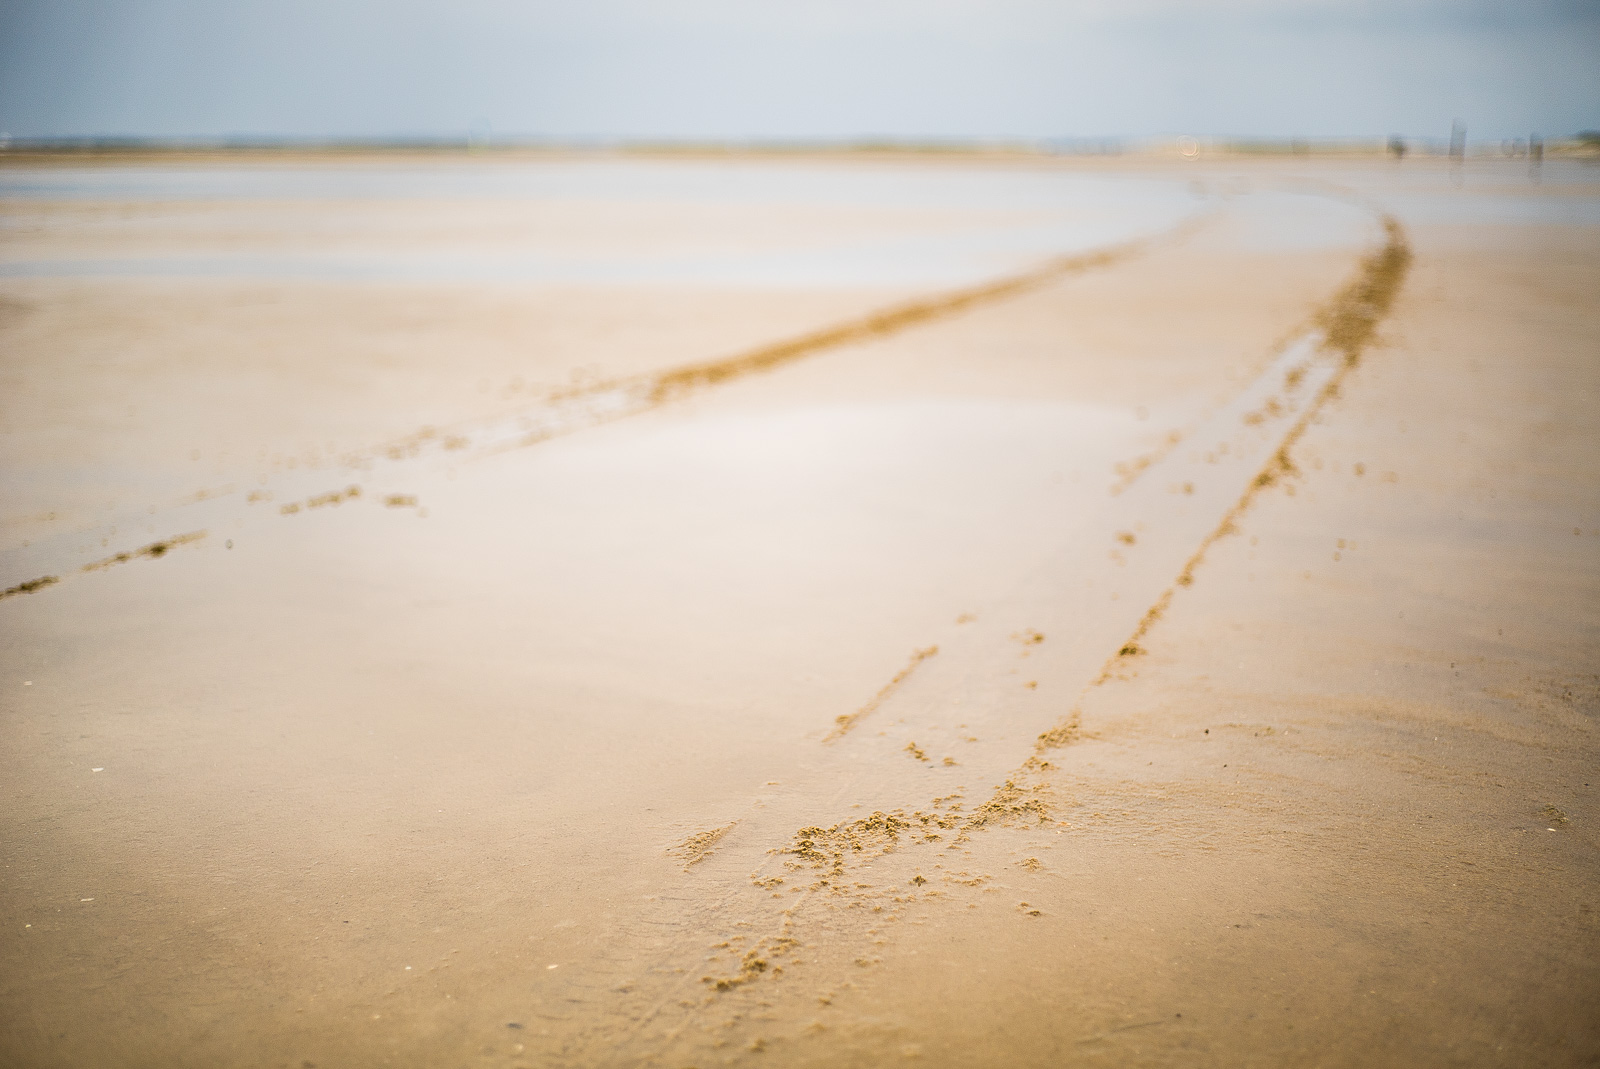 zwei Fahrspuren ziehen sich durch Sand, diagonal durchs Bild, bis zum Horizont